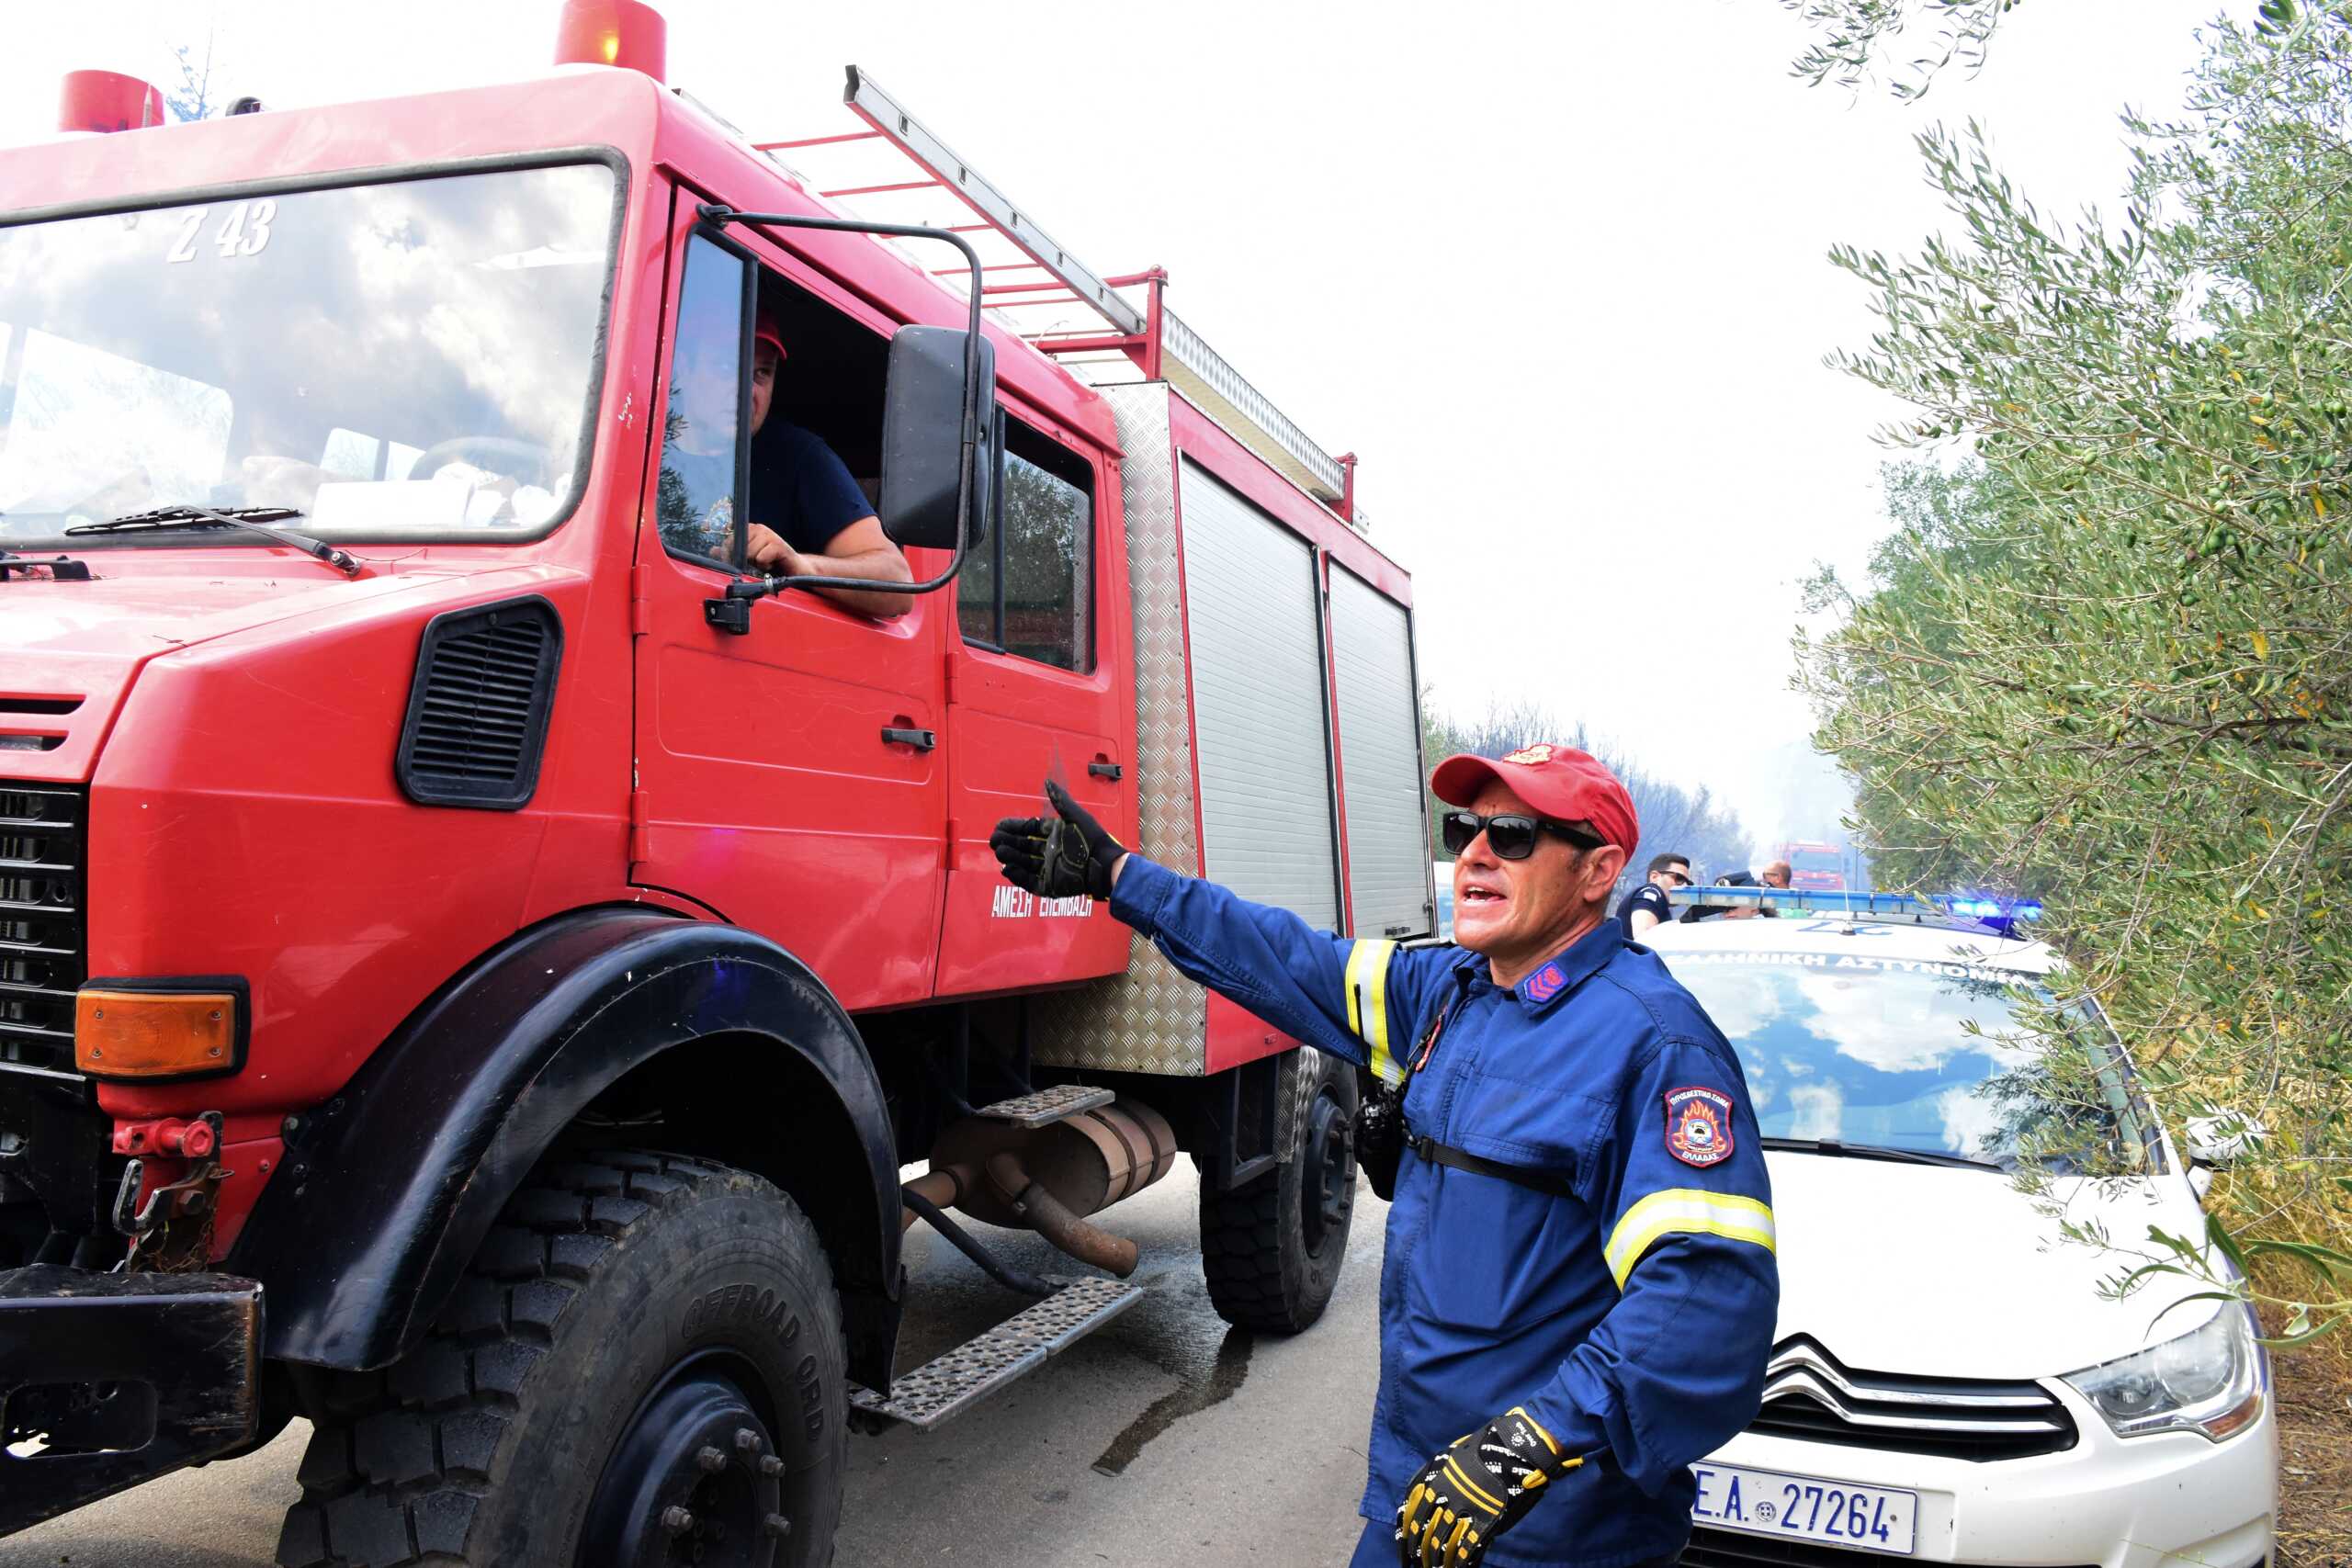 Ηράκλειο: Μεγάλη φωτιά σε αποθήκη απειλεί σπίτια στην περιοχή Κατσάμπας